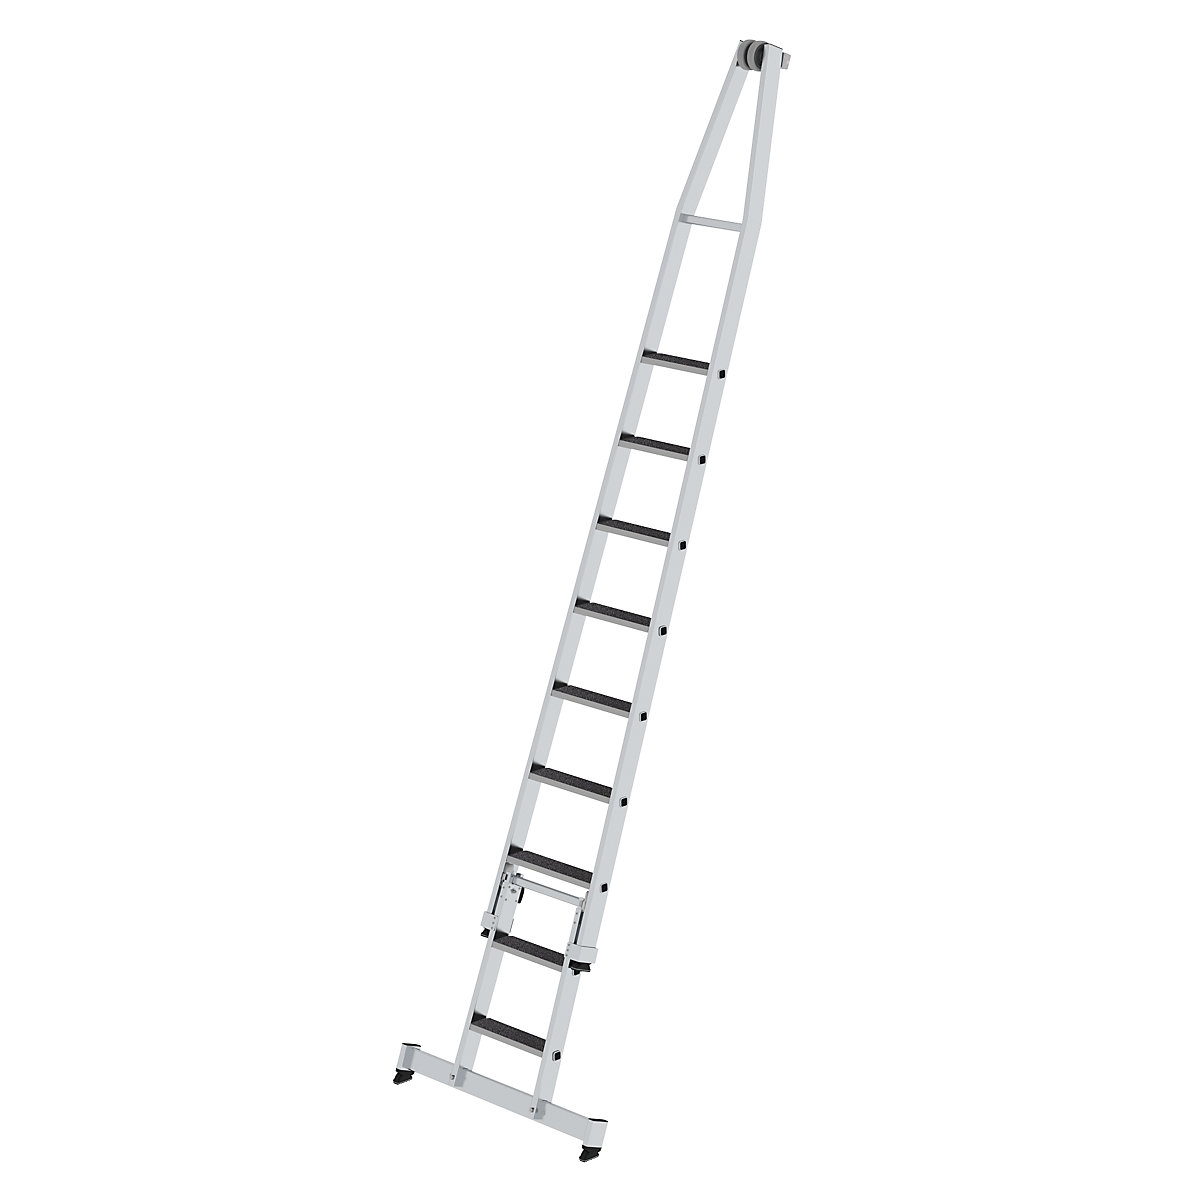 Escada para limpar vidros – MUNK, com apoio para os pés, 2 peças, 9 degraus-10